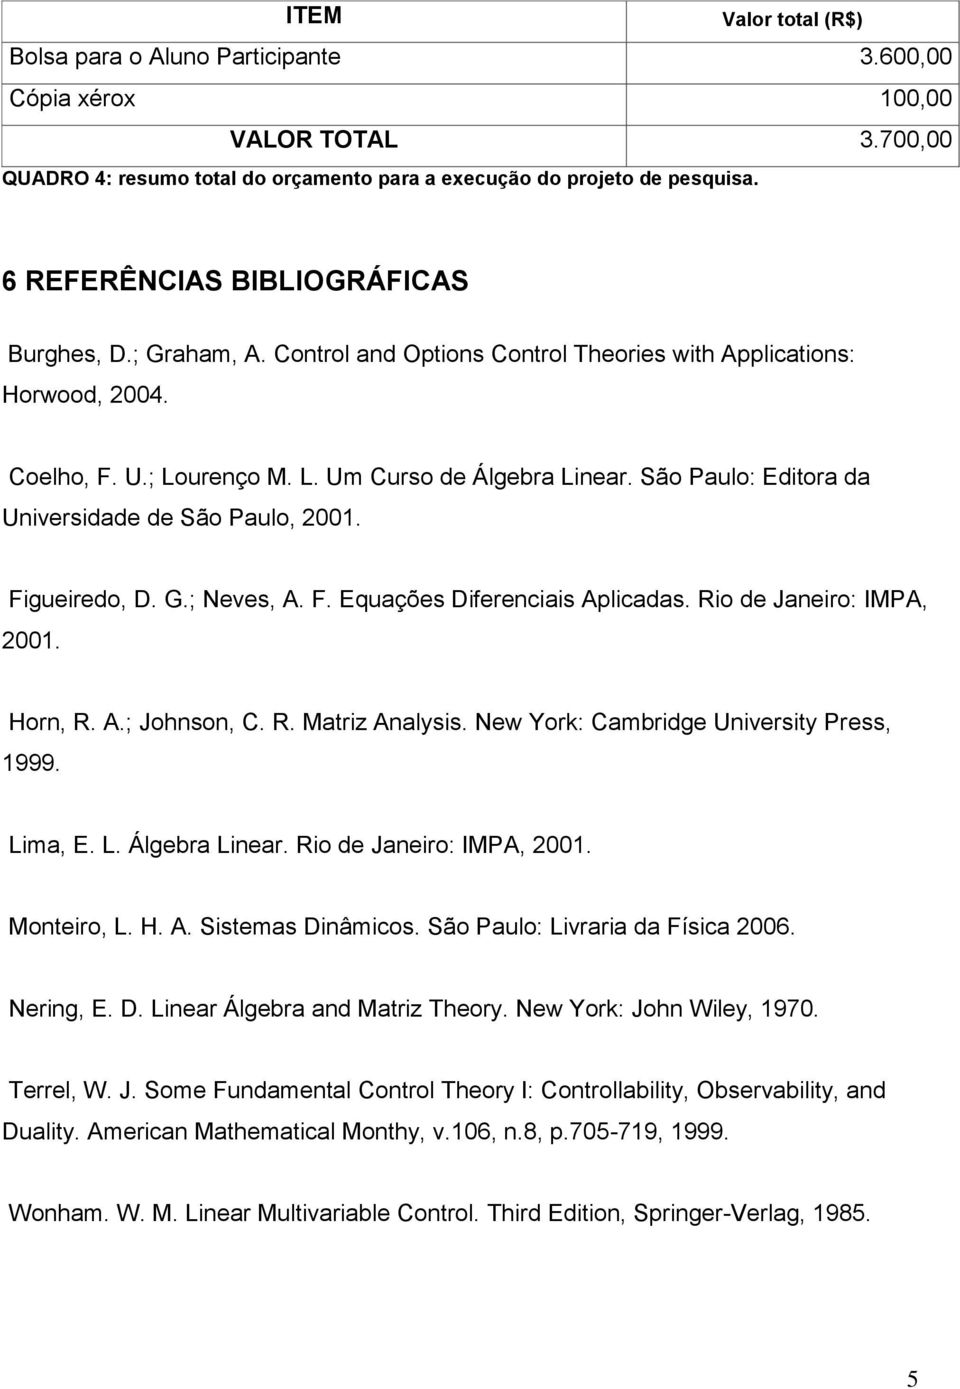 São Paulo: Editora da Universidade de São Paulo, 2001. Figueiredo, D. G.; Neves, A. F. Equações Diferenciais Aplicadas. Rio de Janeiro: IMPA, 2001. Horn, R. A.; Johnson, C. R. Matriz Analysis.